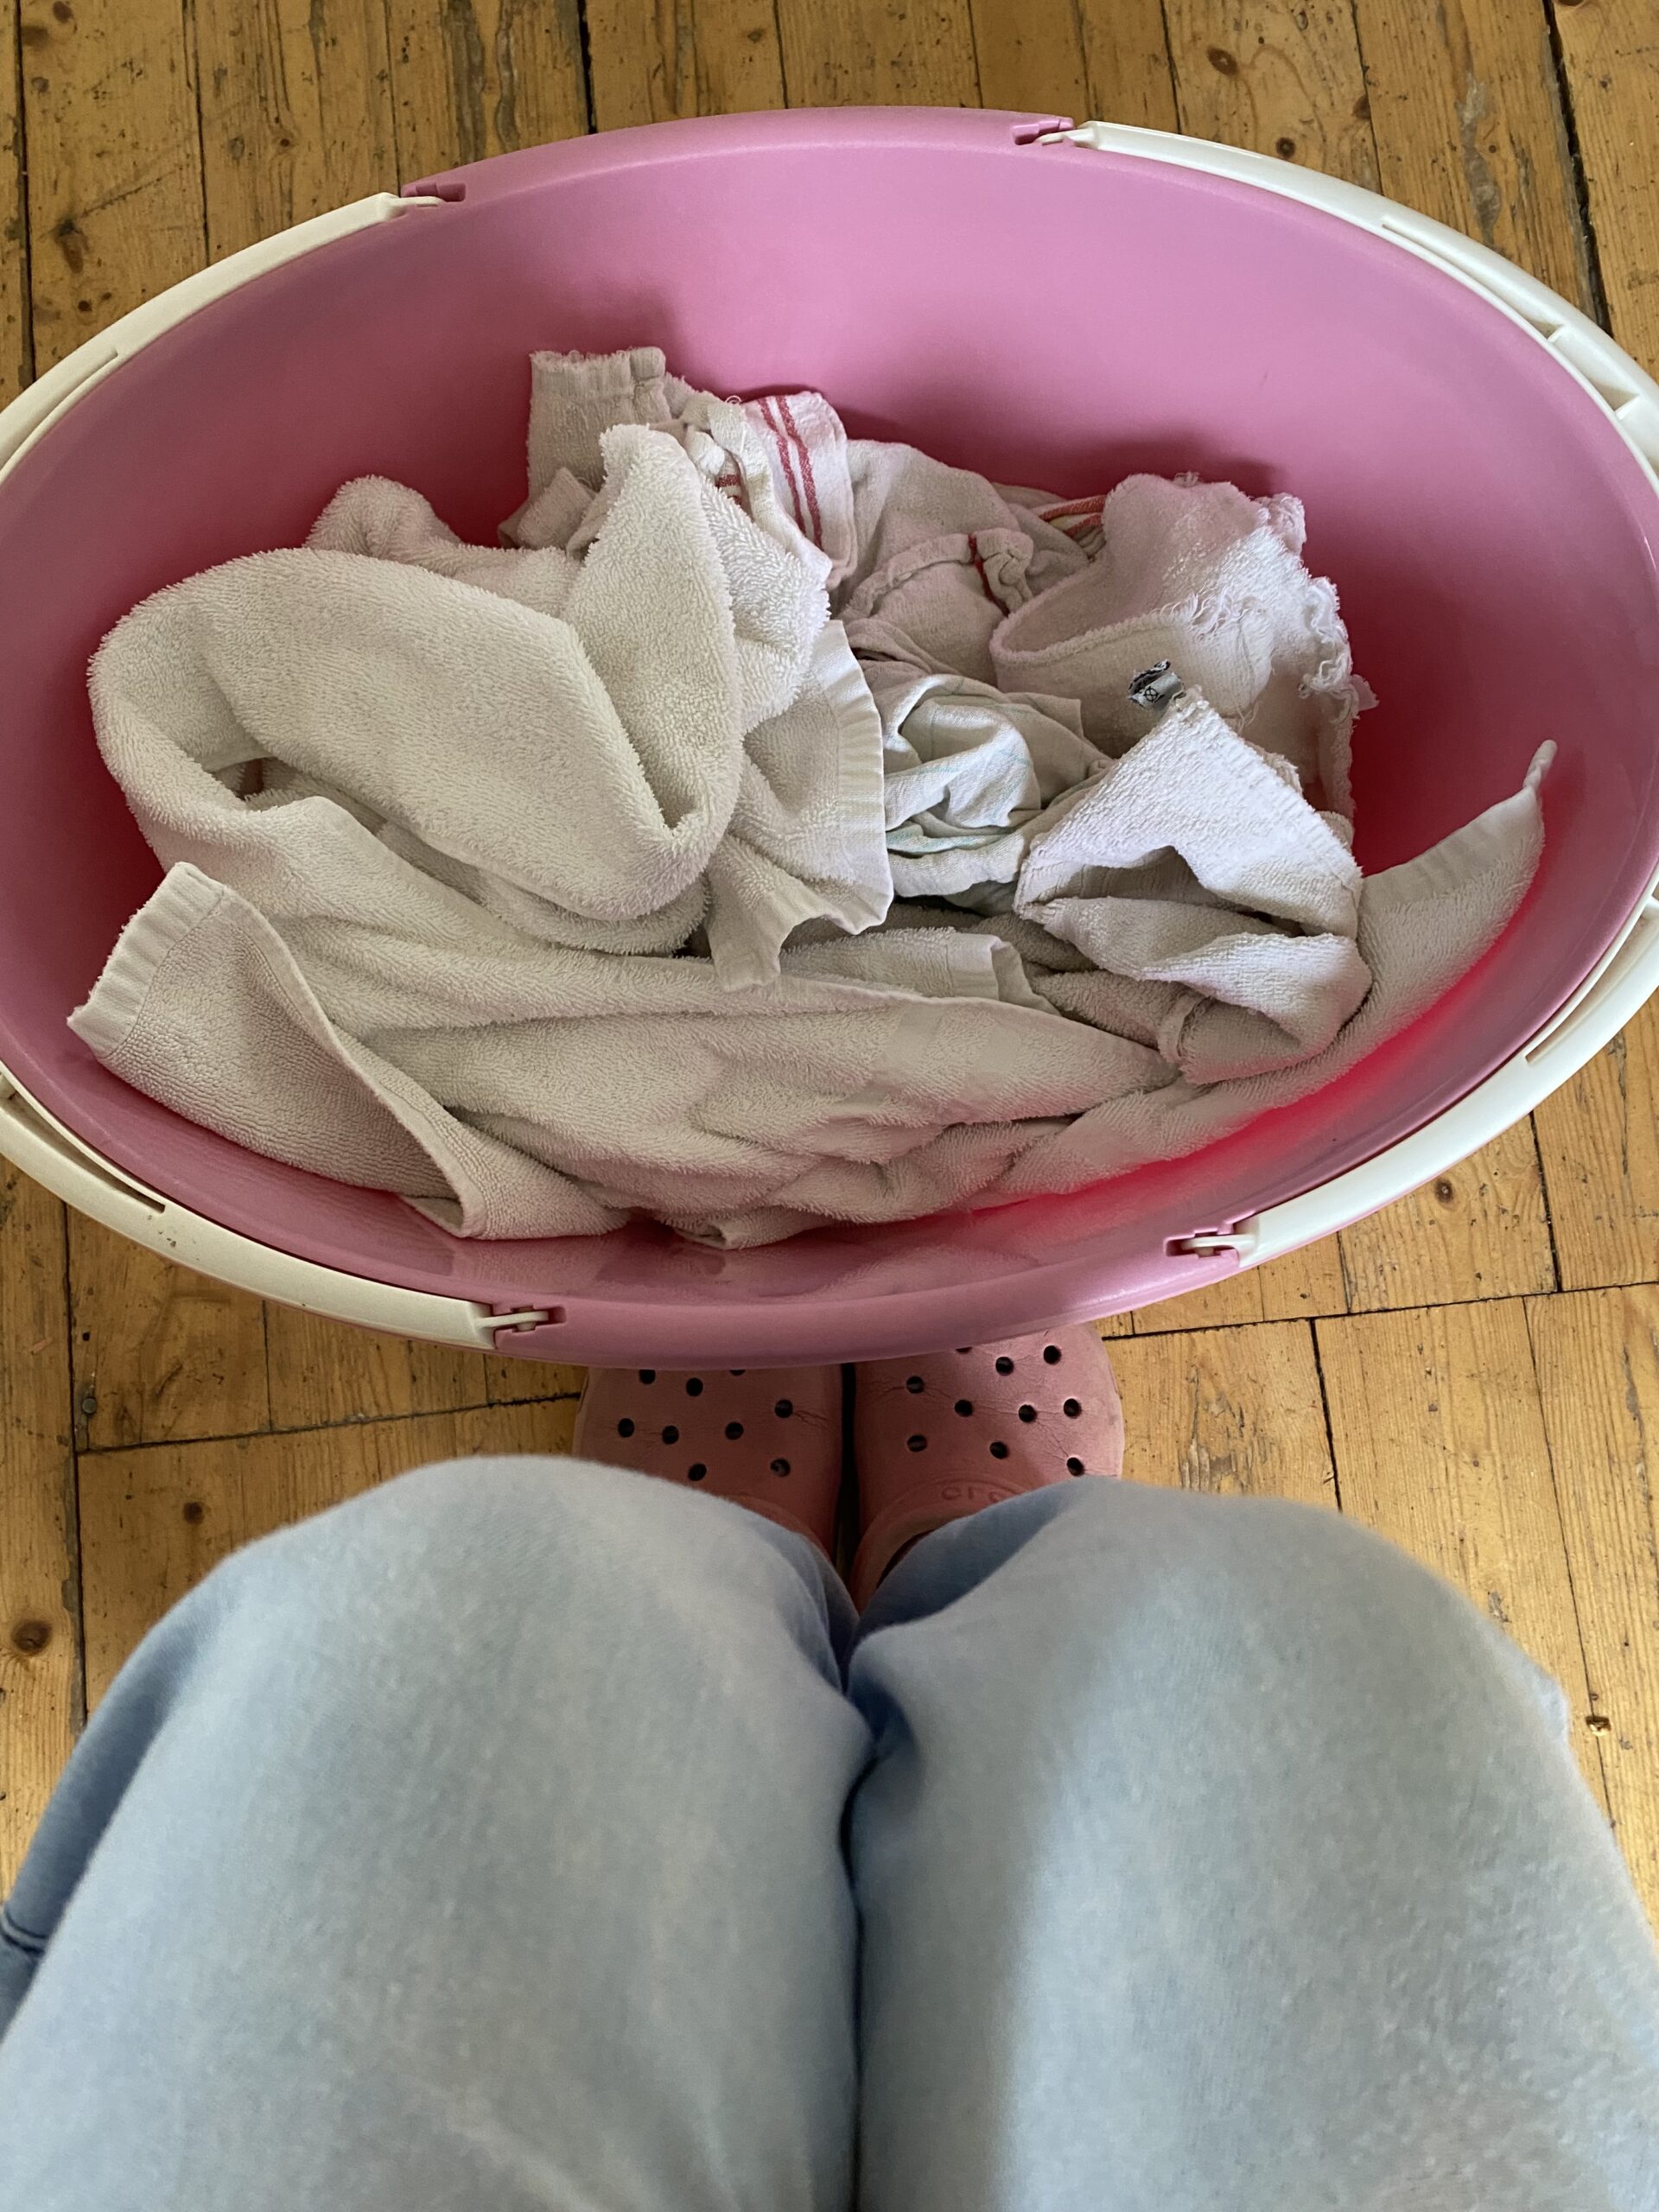 Wäschekorb mit frischen Handtüchern 